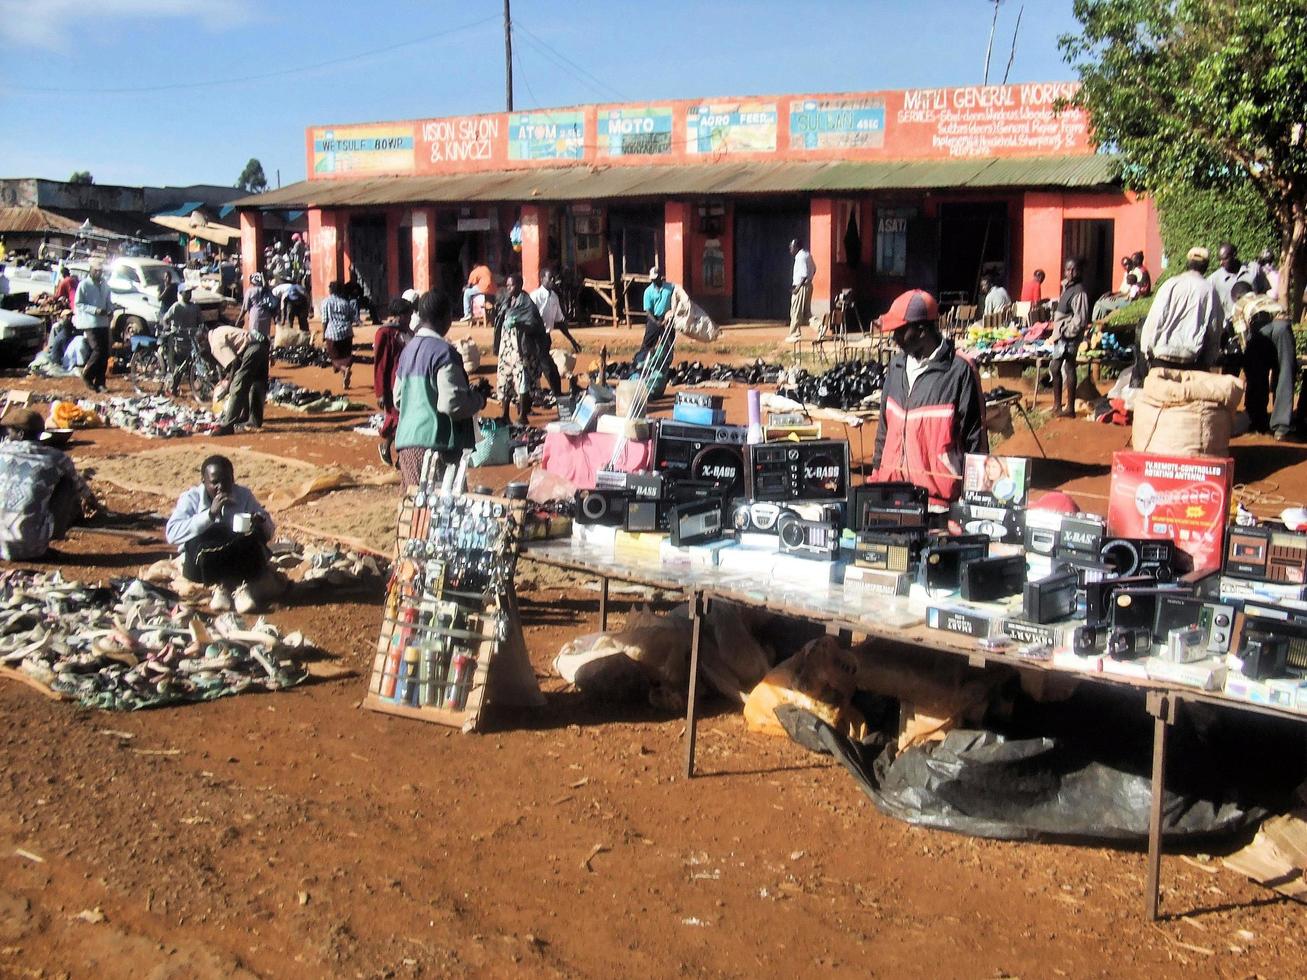 kimilili au kenya en février 2011. une vue des personnes vendant des produits au kenya photo